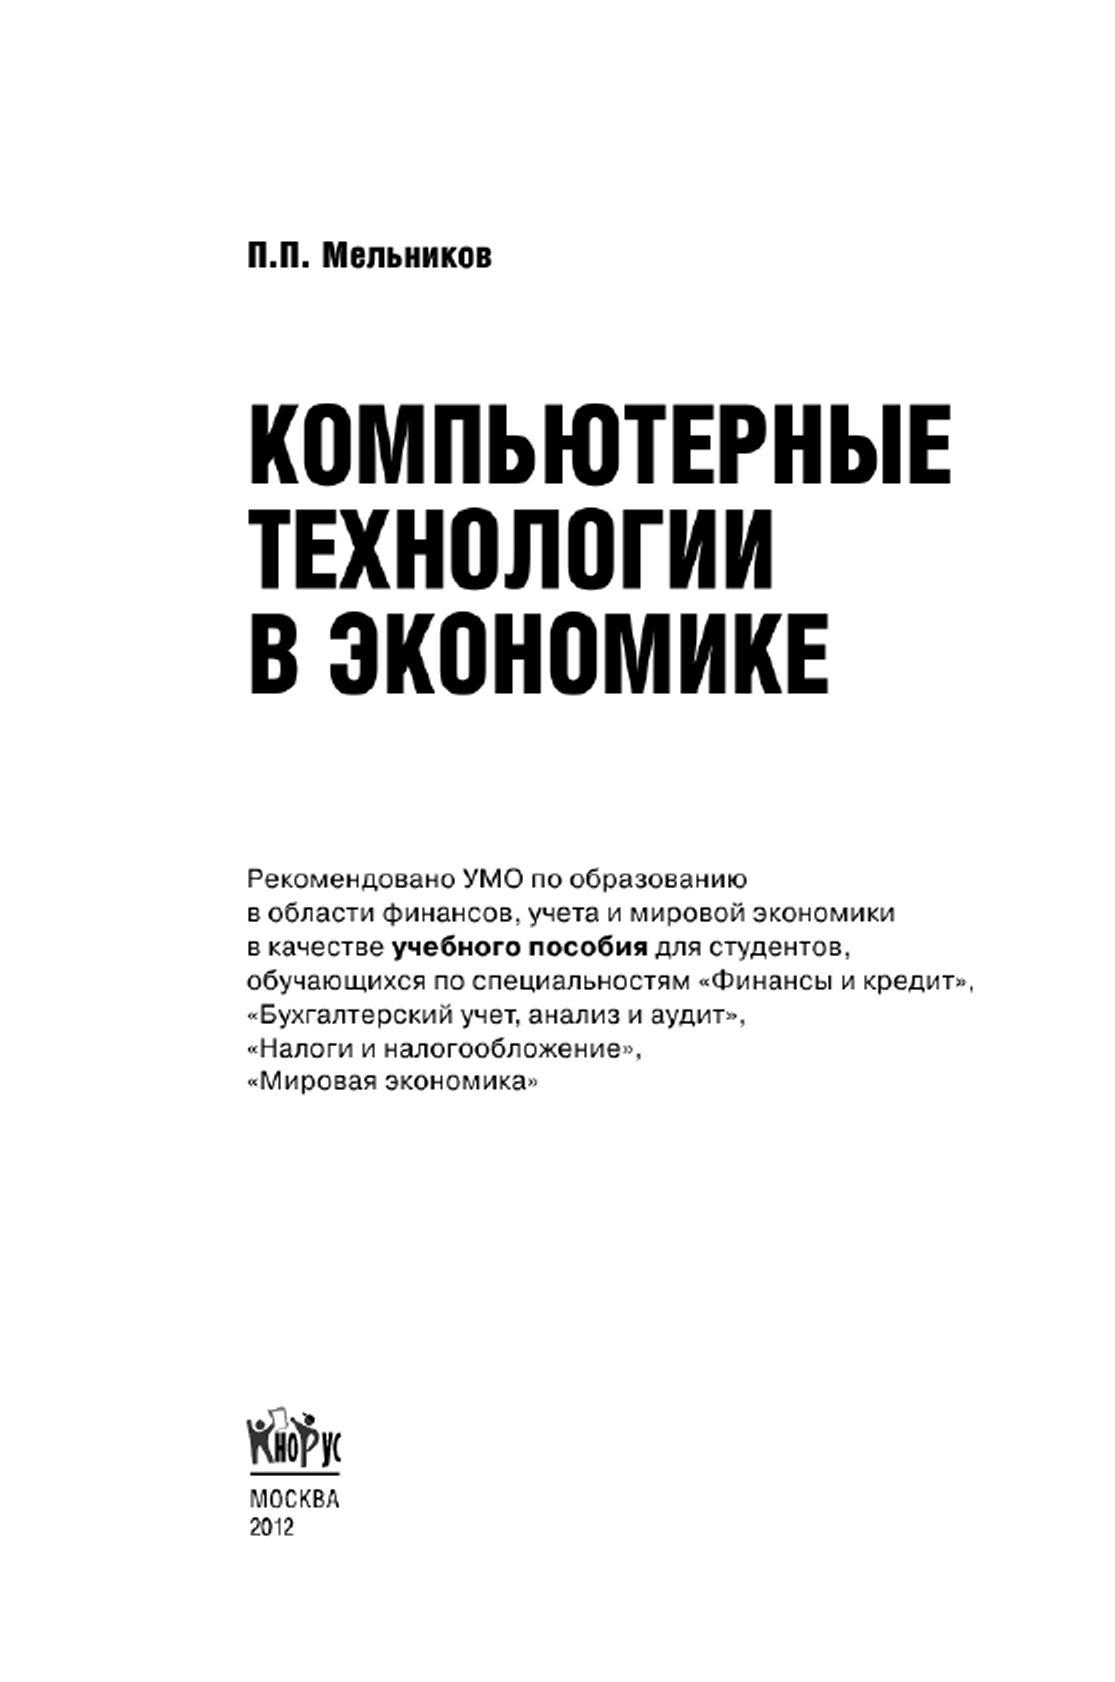 Компьютерные технологии в экономике, Учебное пособие, Мельников П.П., 2012